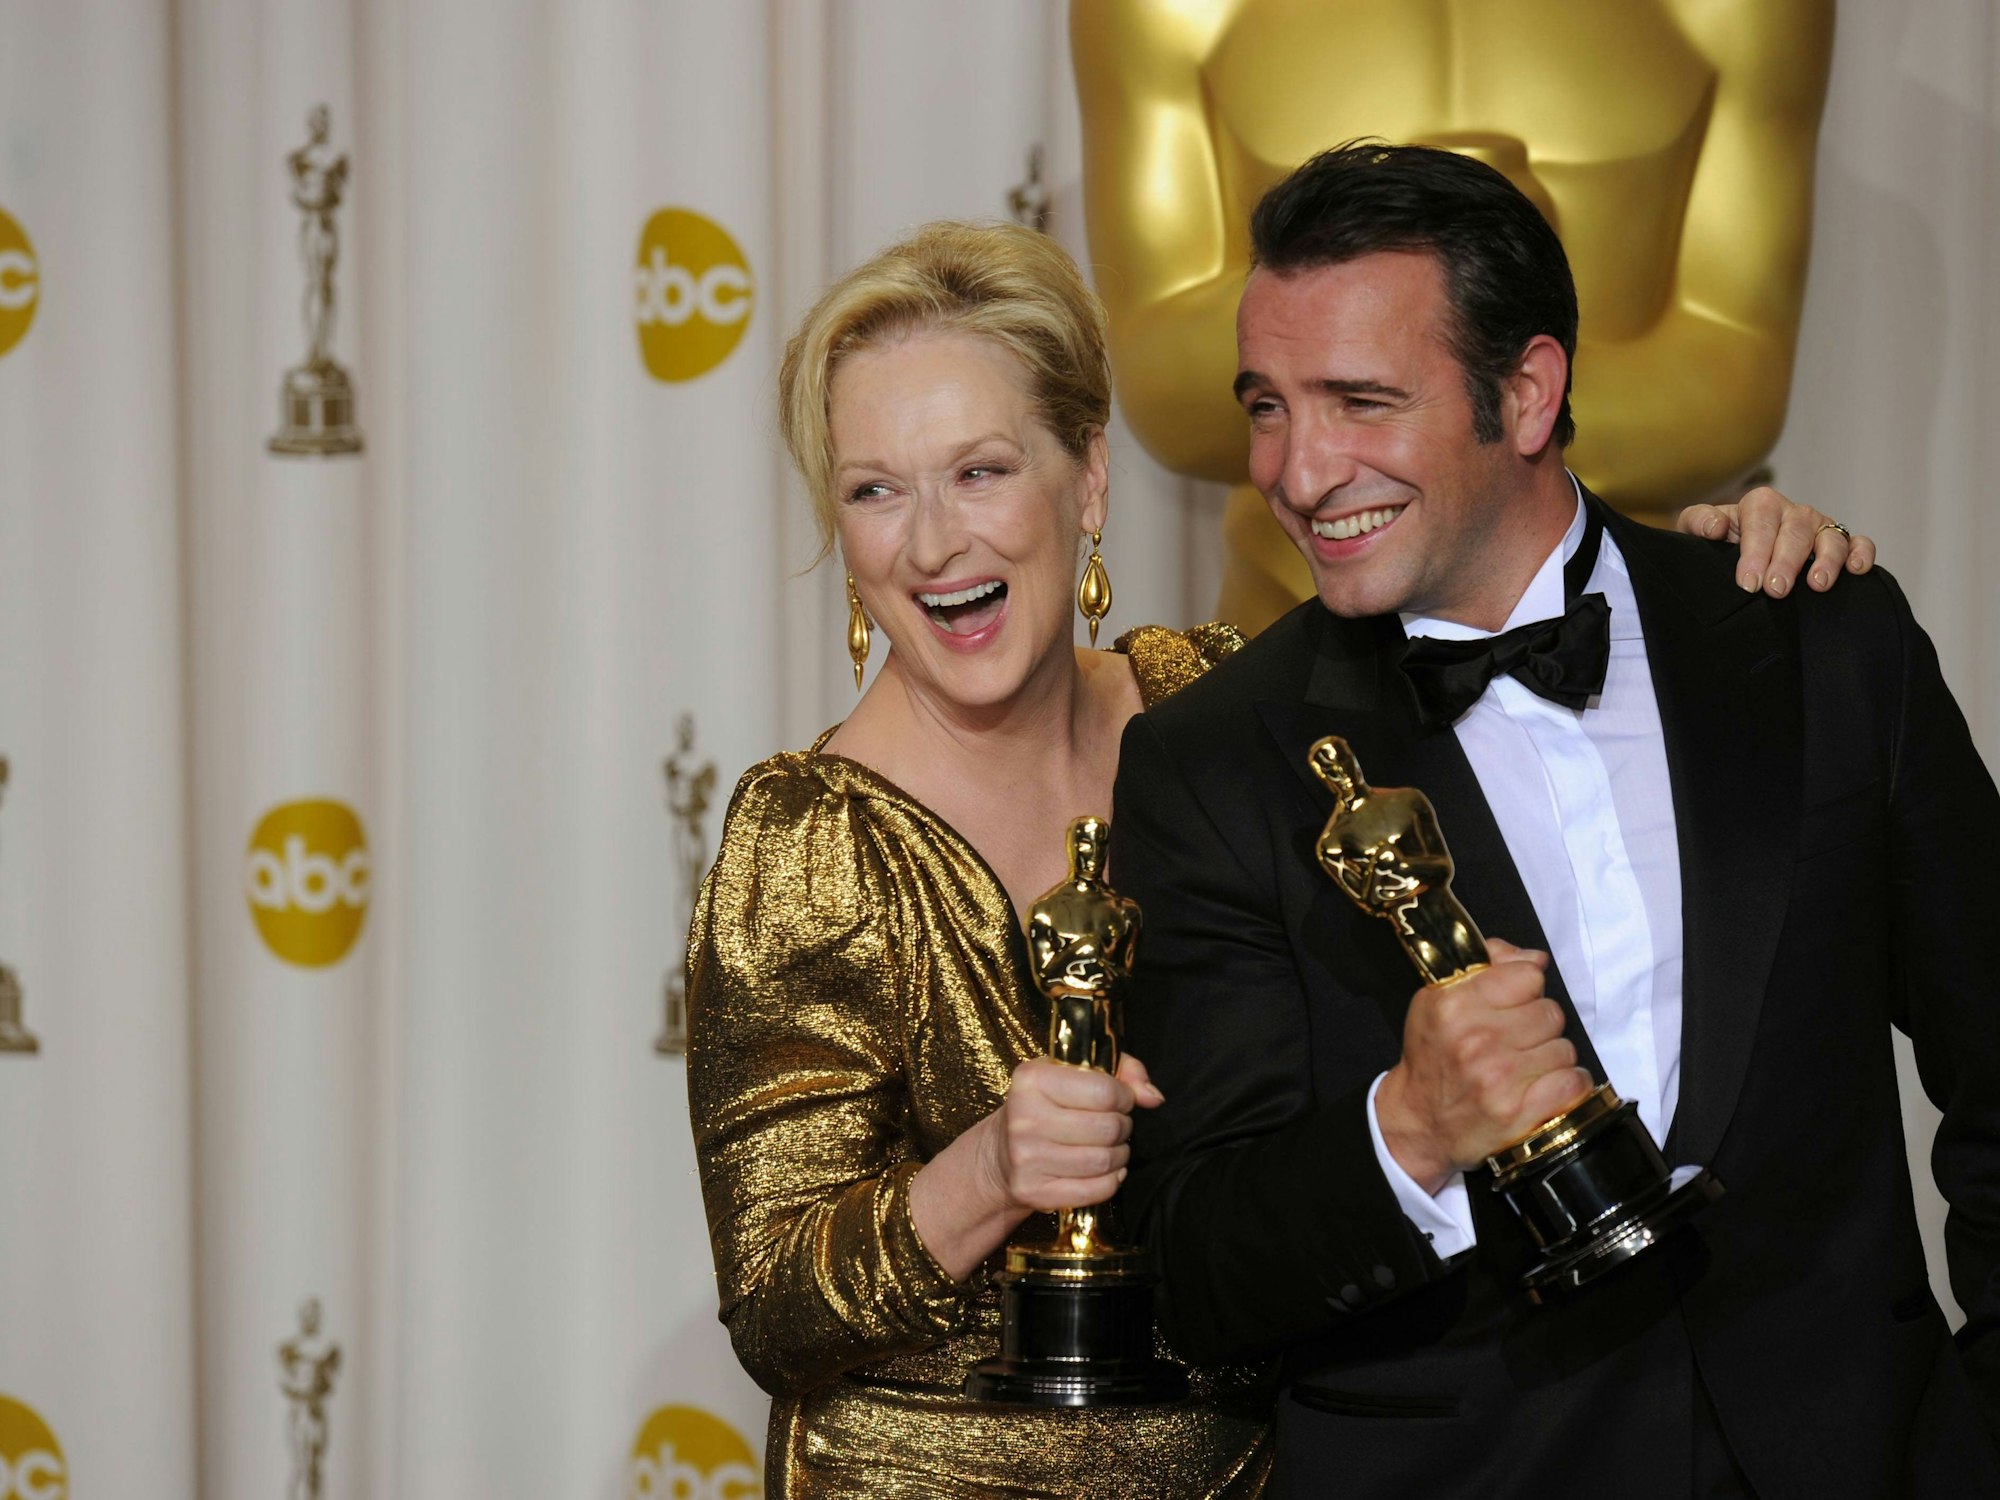 Jean Dujardin mit seinem Oscar als bester Schauspieler. Die Aufnahme stammt aus dem Jahr 2012 neben ihm steht Meryl Streep.